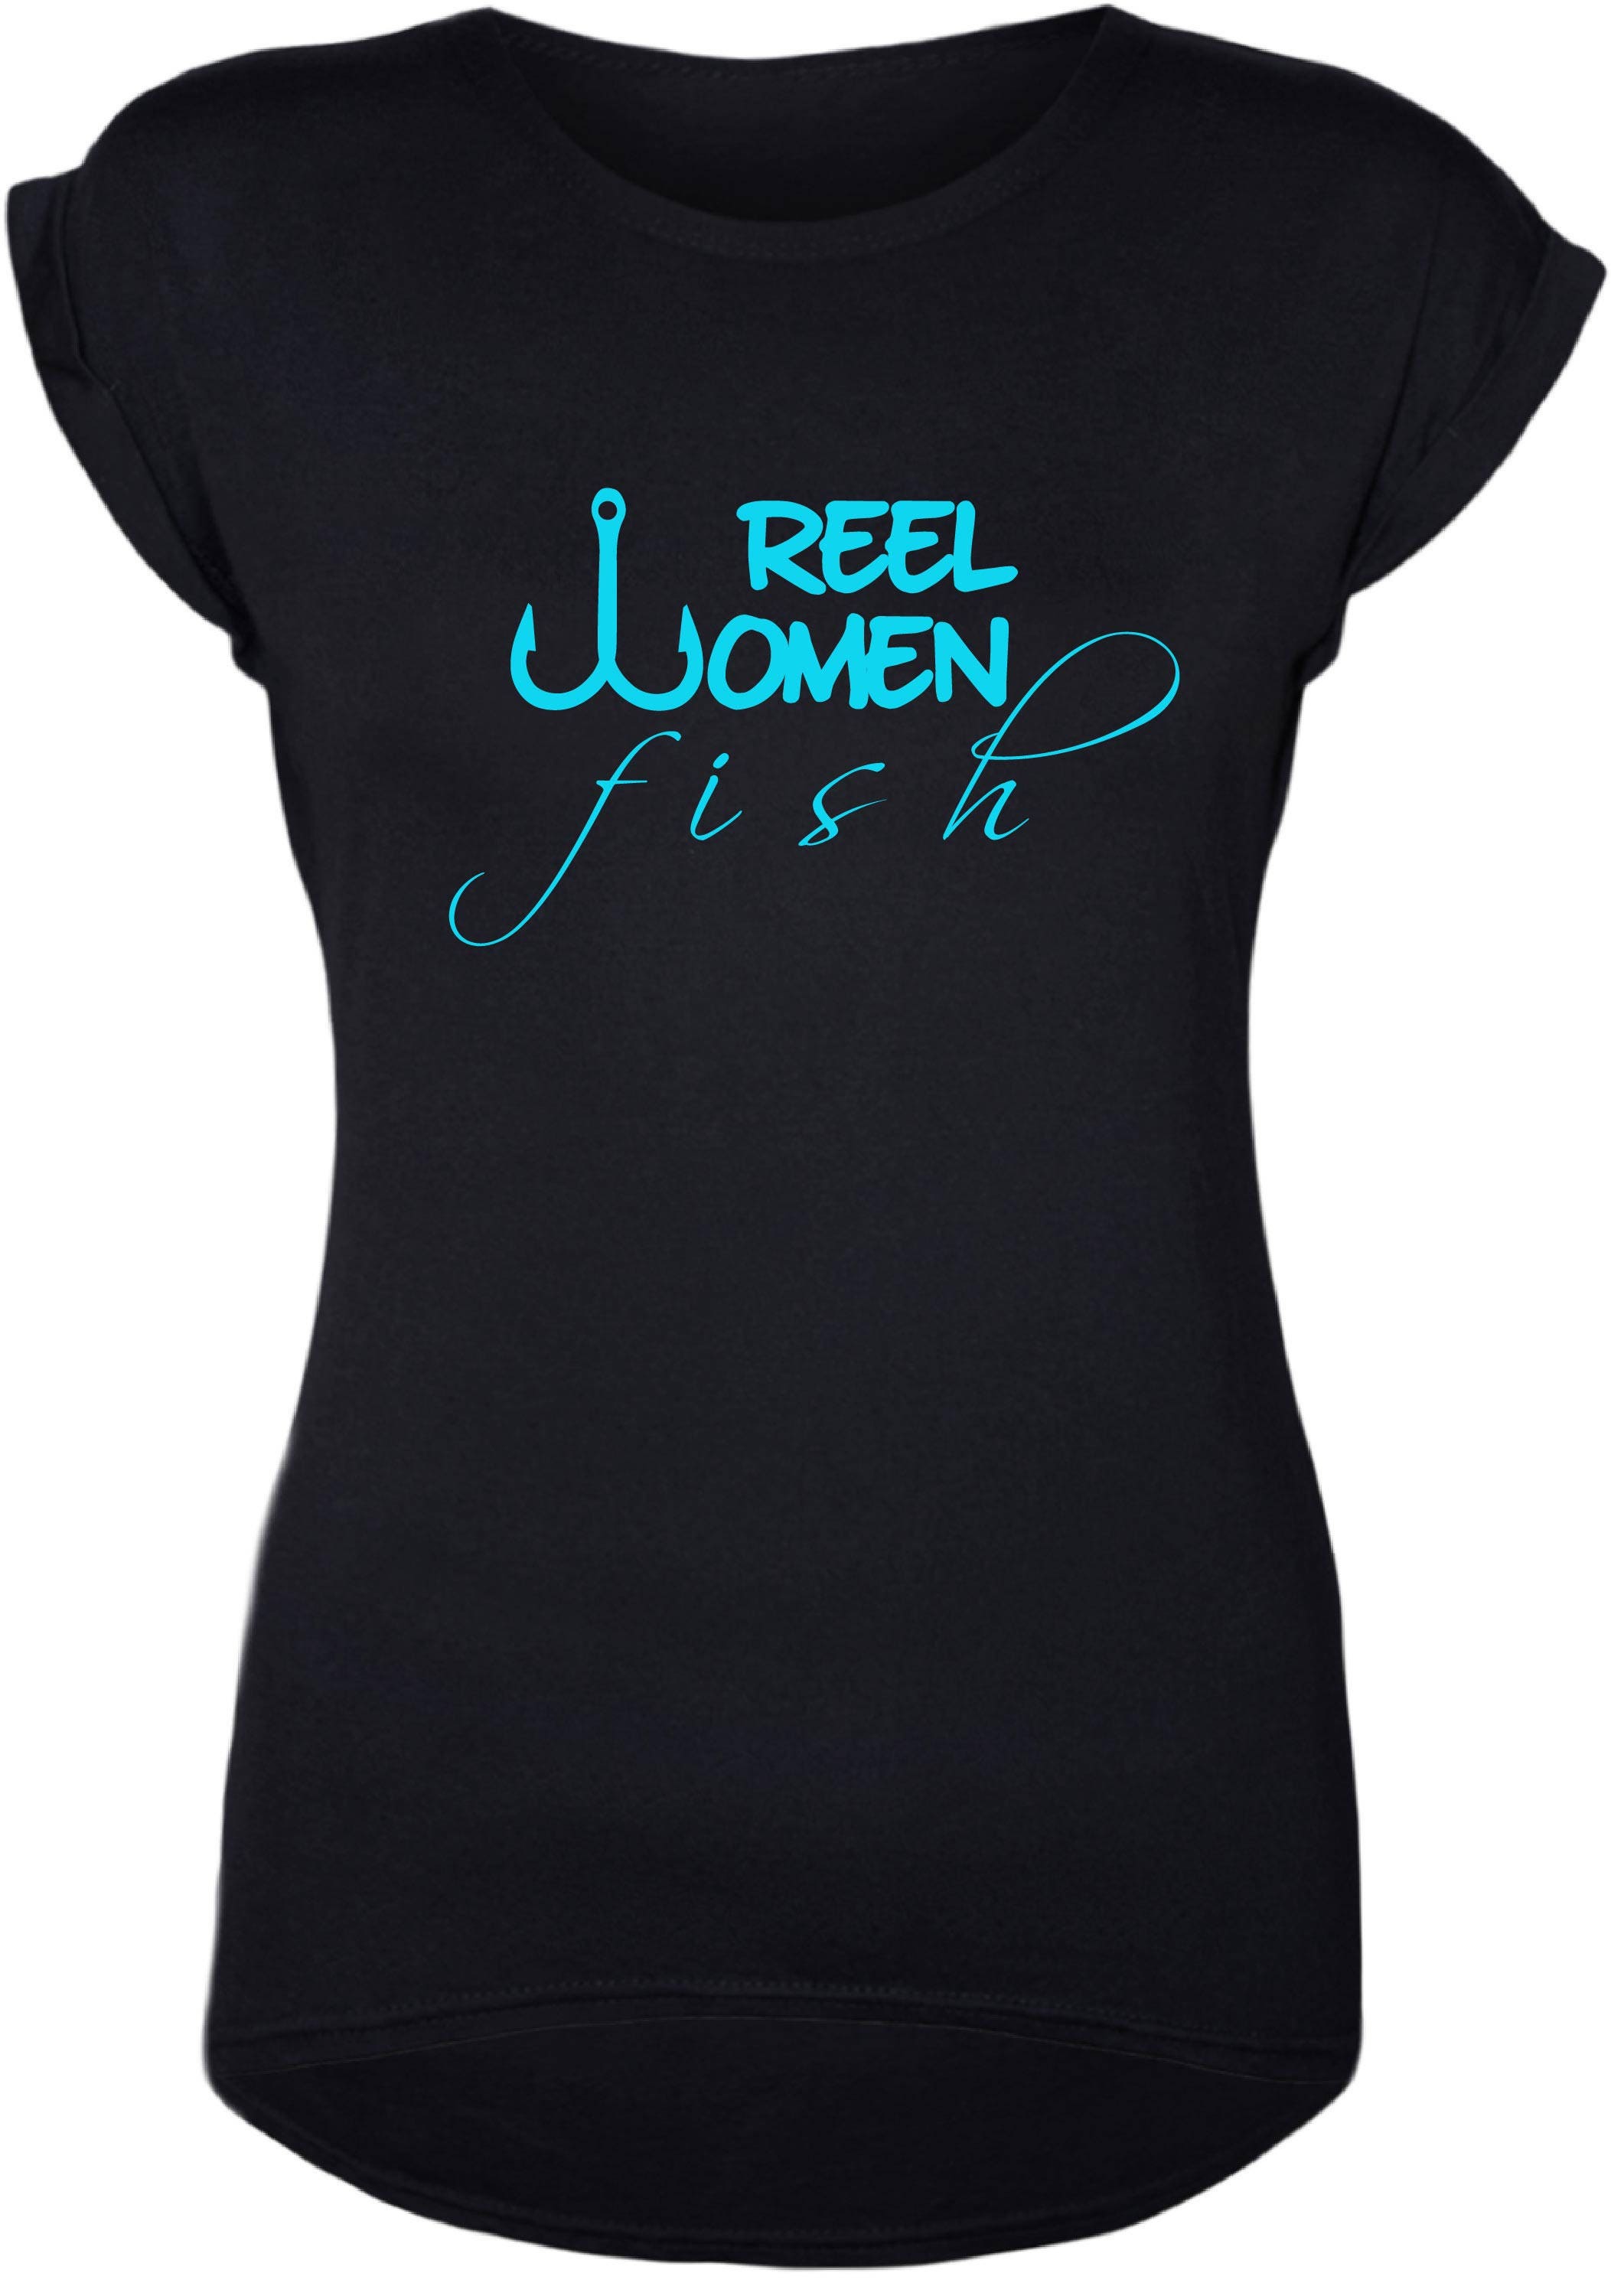 Fishing Shirts, Fishing Shirts for Women, Women's Fishing Shirts, Fishing  Gift for Women, Reel Women Fish, Fisherwoman, Gift for Her, Tshirt -  UK